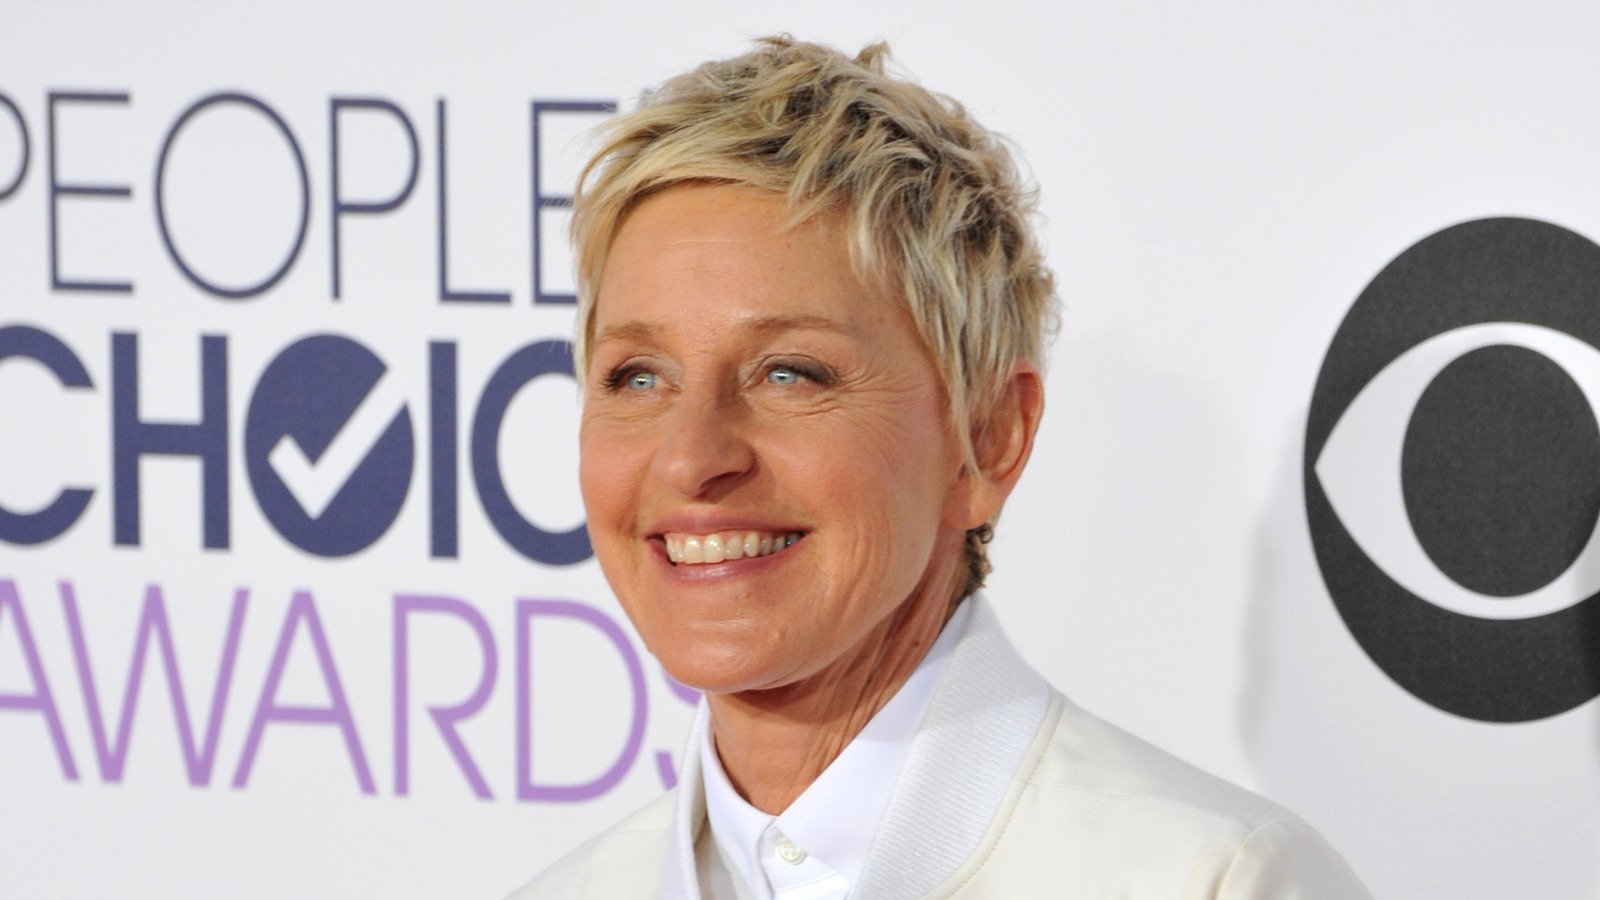 13 Times Ellen DeGeneres Made Her Guests Uncomfortable